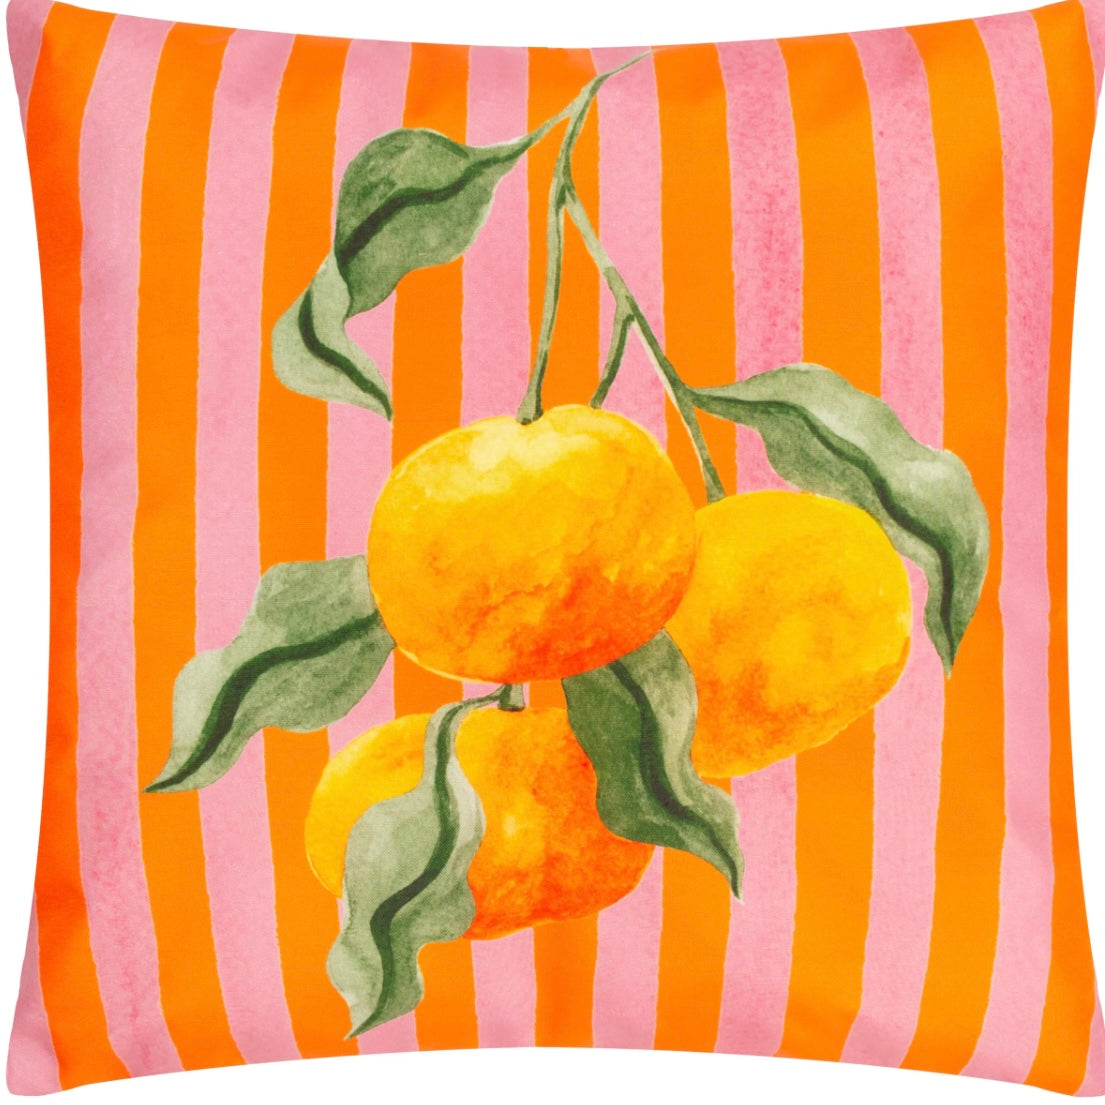 Orange Outdoors Cushion